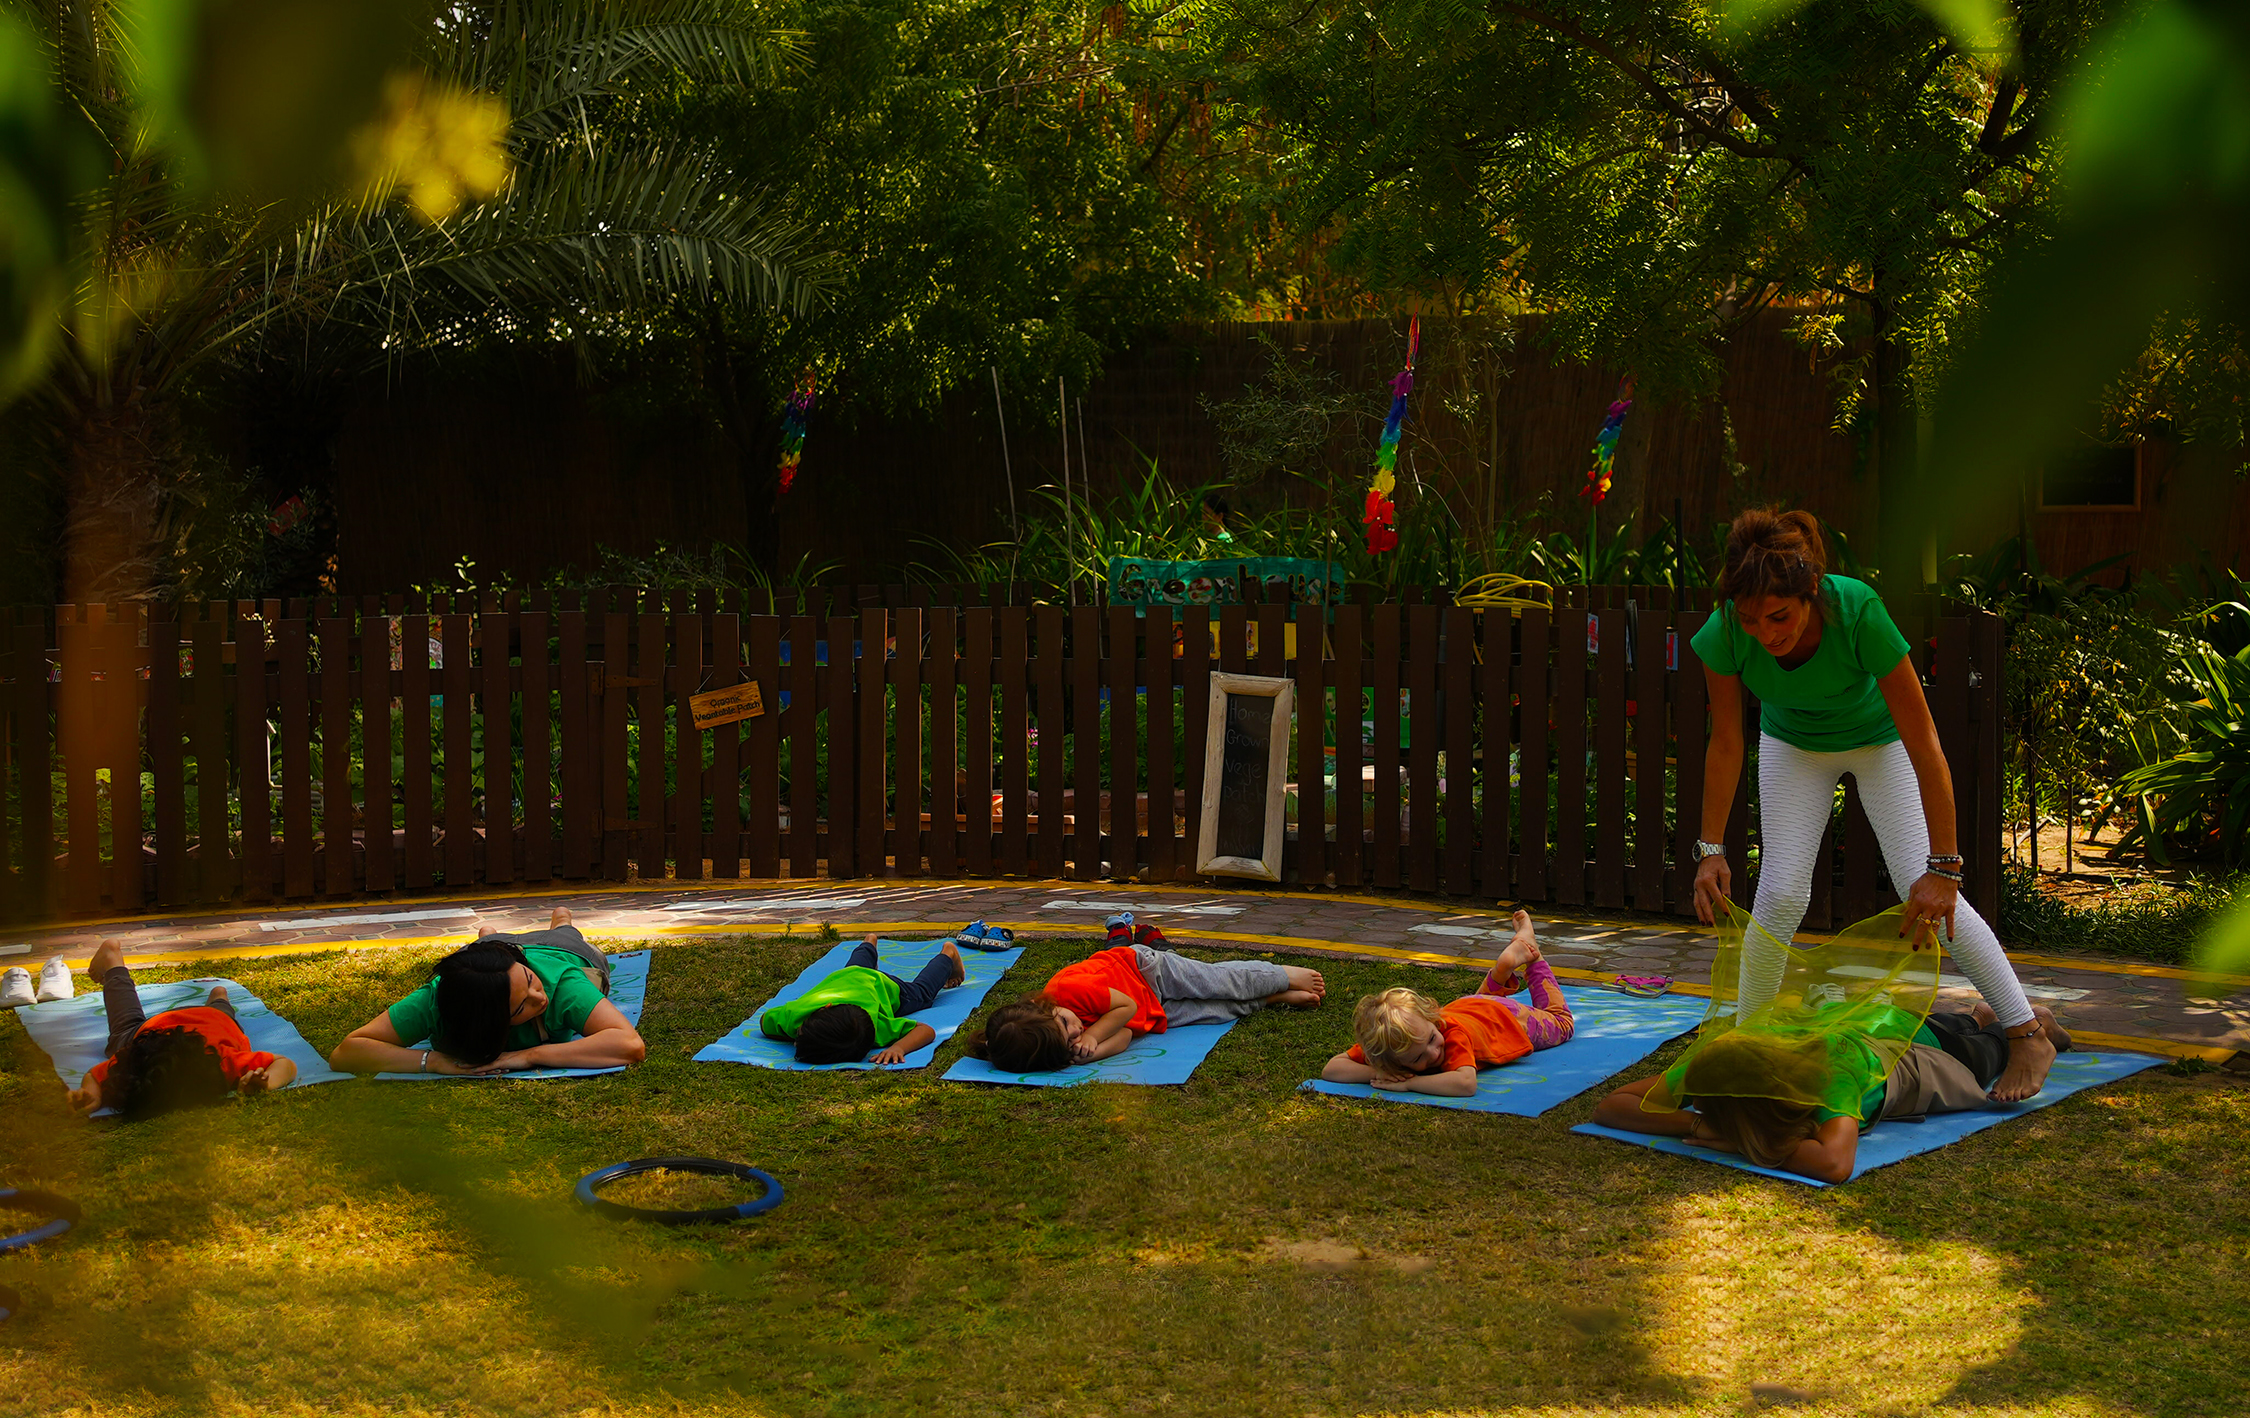 مراجعة المدرسة لحضانة هوم جرون للأطفال في دبي، حيث ركزت هنا على تقديم دروس اليوغا للأطفال في الحدائق الجميلة